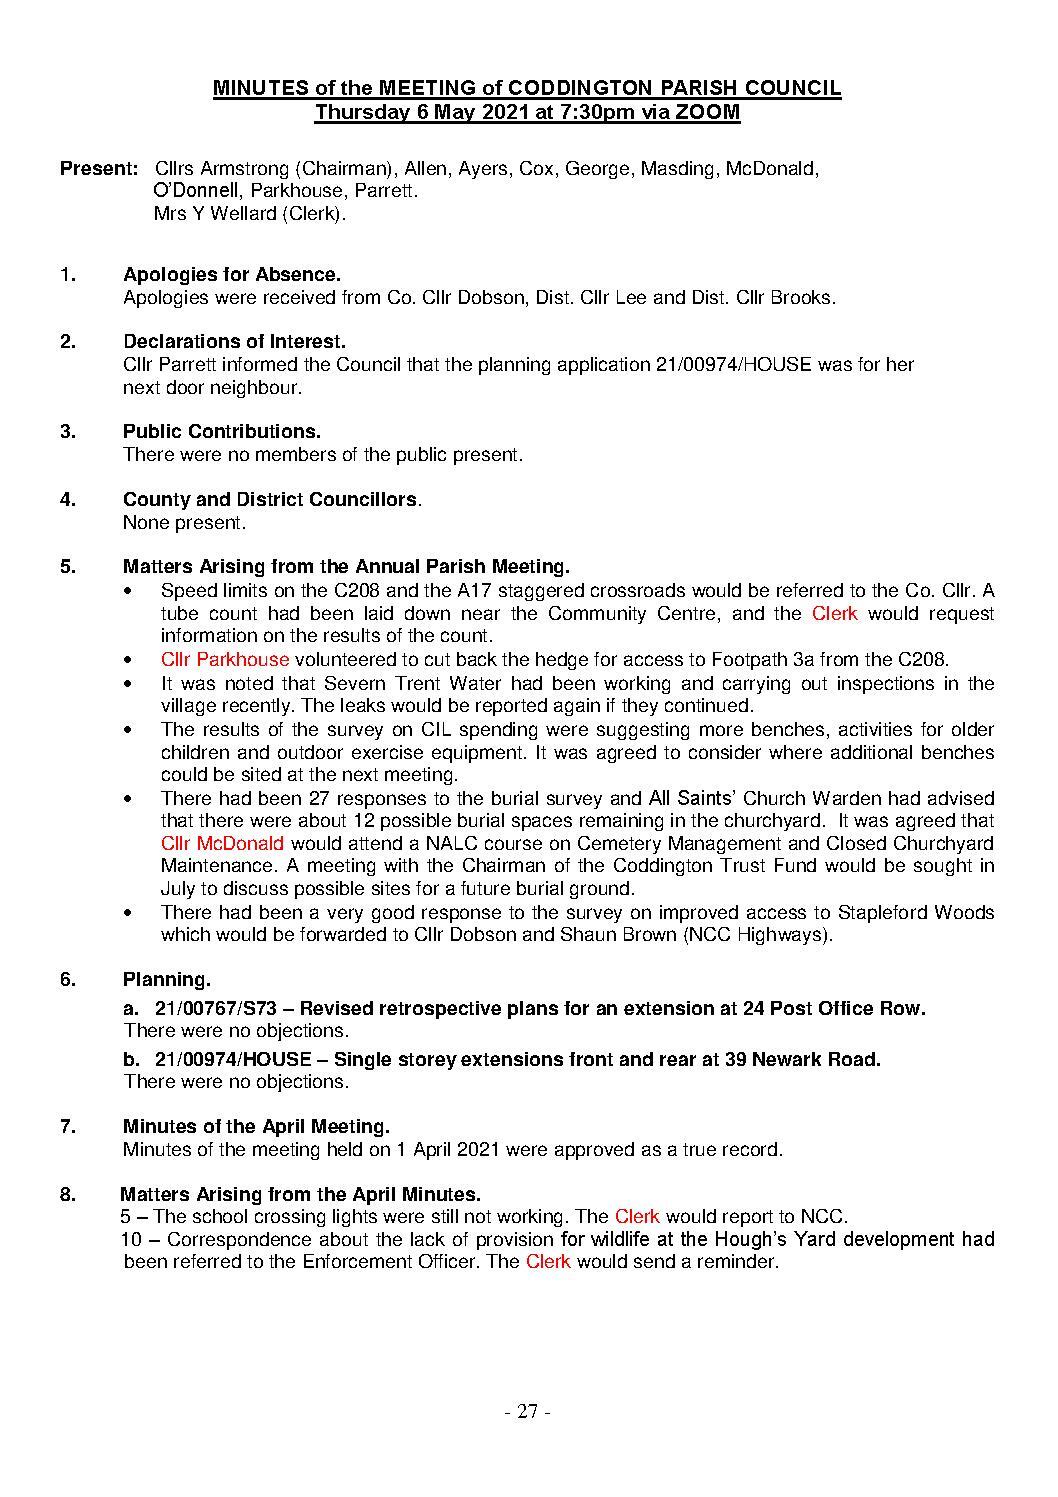 Parish Council Meeting 6 May 2021 Minutes